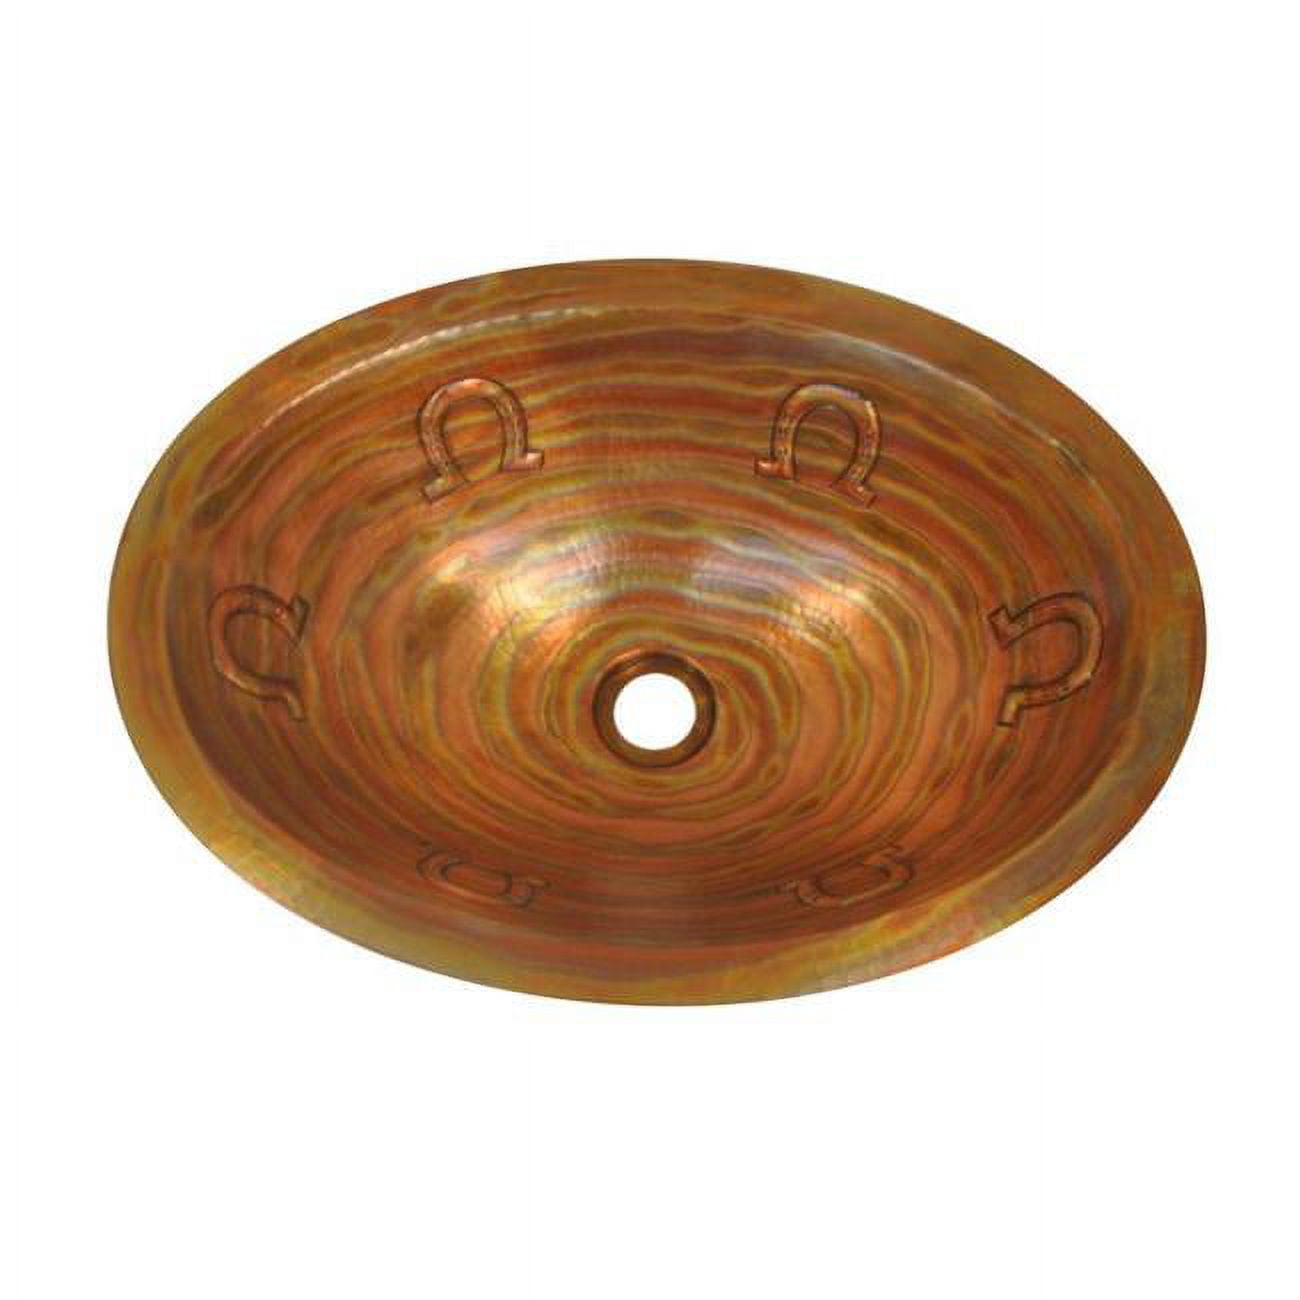 Cos-hs-19-rl-ma Copper Oval Bath Sink, Matte - Horseshoe Design - 6 X 14 X 19 In.